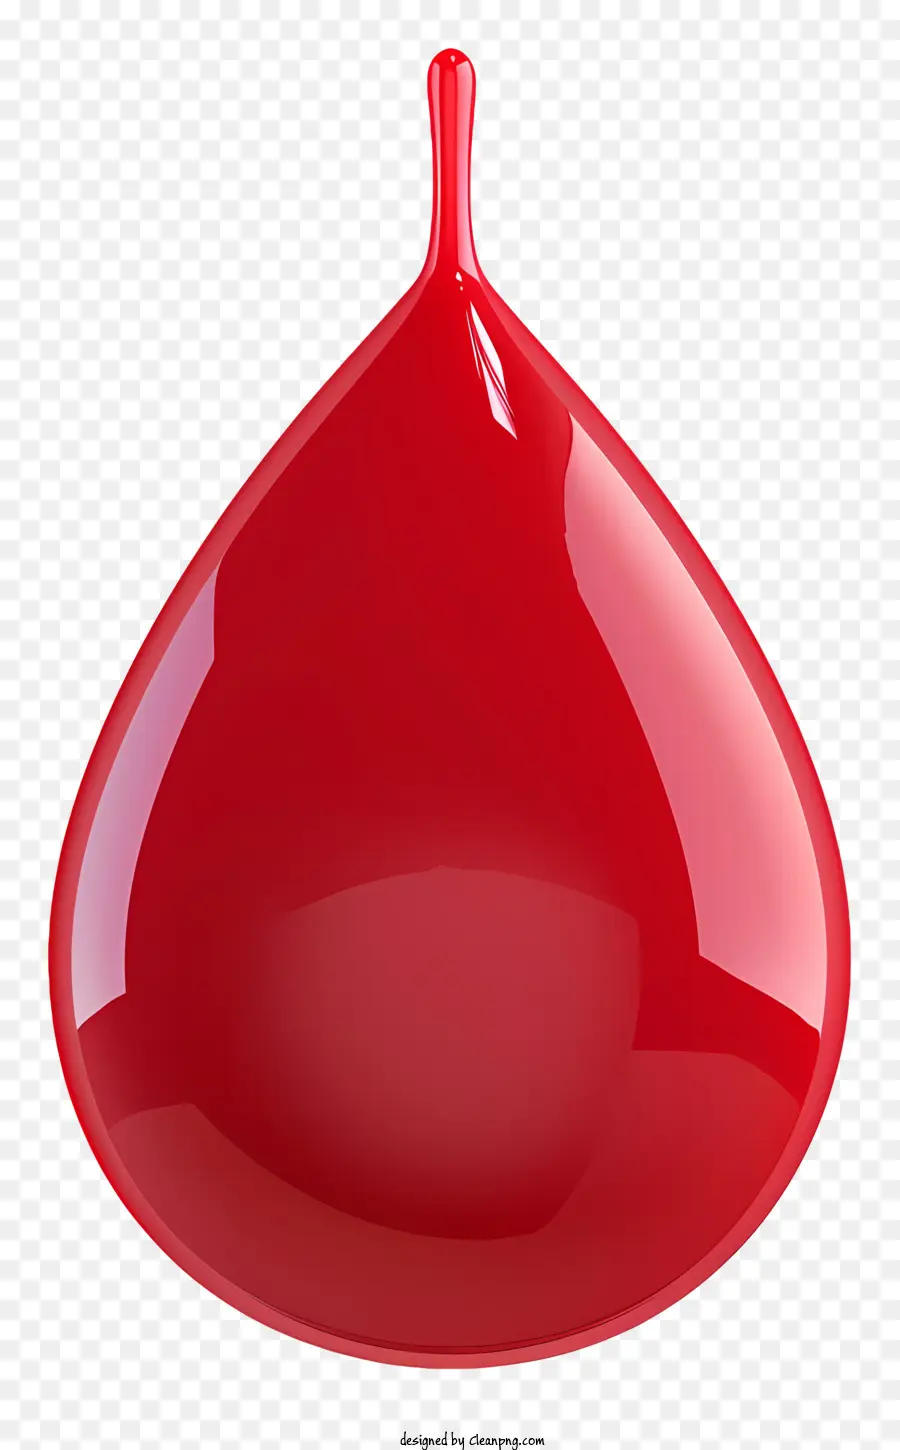 Mất máu rơi màu đỏ lơ lửng - Drop chất lỏng màu đỏ xuất hiện lơ lửng trong không khí